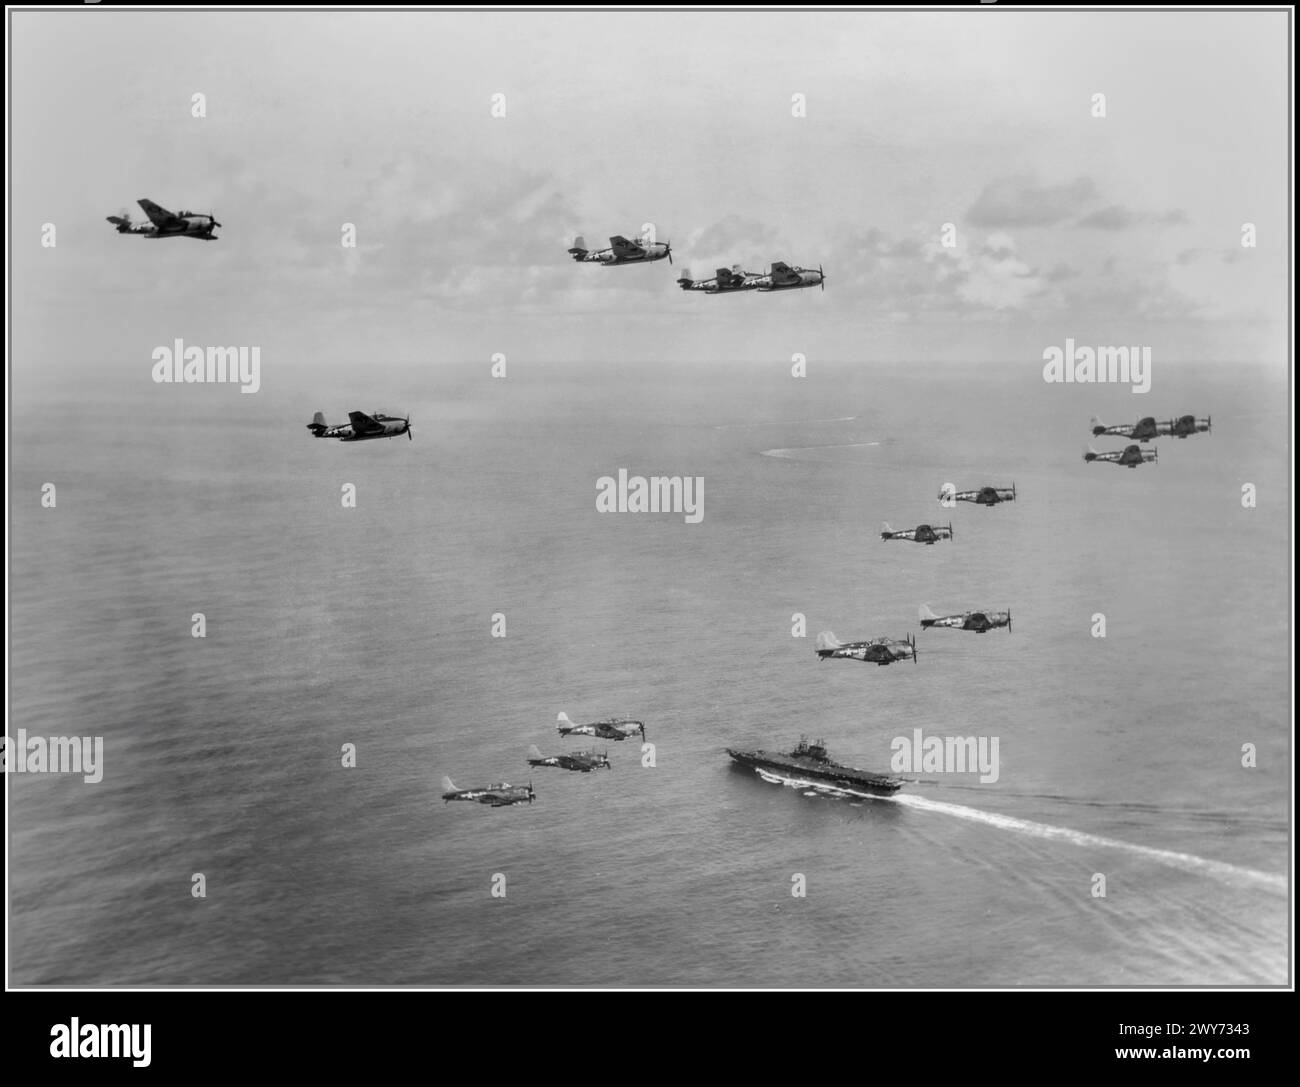 Les bombardiers torpilleurs américains Grumman TBF-1 Avenger du 10e escadron de torpilles (Torpedo Squadron 10, VT-10) et onze bombardiers Douglas SBD-5 Dauntless du Bombing Squadron 10 (VB-10) survolent le porte-avions USS Enterprise (CV-6) pour frapper Palau. Les deux escadrons faisaient partie du Carrier Air Group 10 (CVG-10), basé sur l'Enterprise de janvier à juillet 1944. La bataille de Peleliu, baptisée opération Stalemate II par l'armée américaine, s'est déroulée entre les États-Unis et le Japon pendant la campagne des îles Mariannes et Palaos de la seconde Guerre mondiale, du 15 septembre au 27 novembre 1944, Banque D'Images